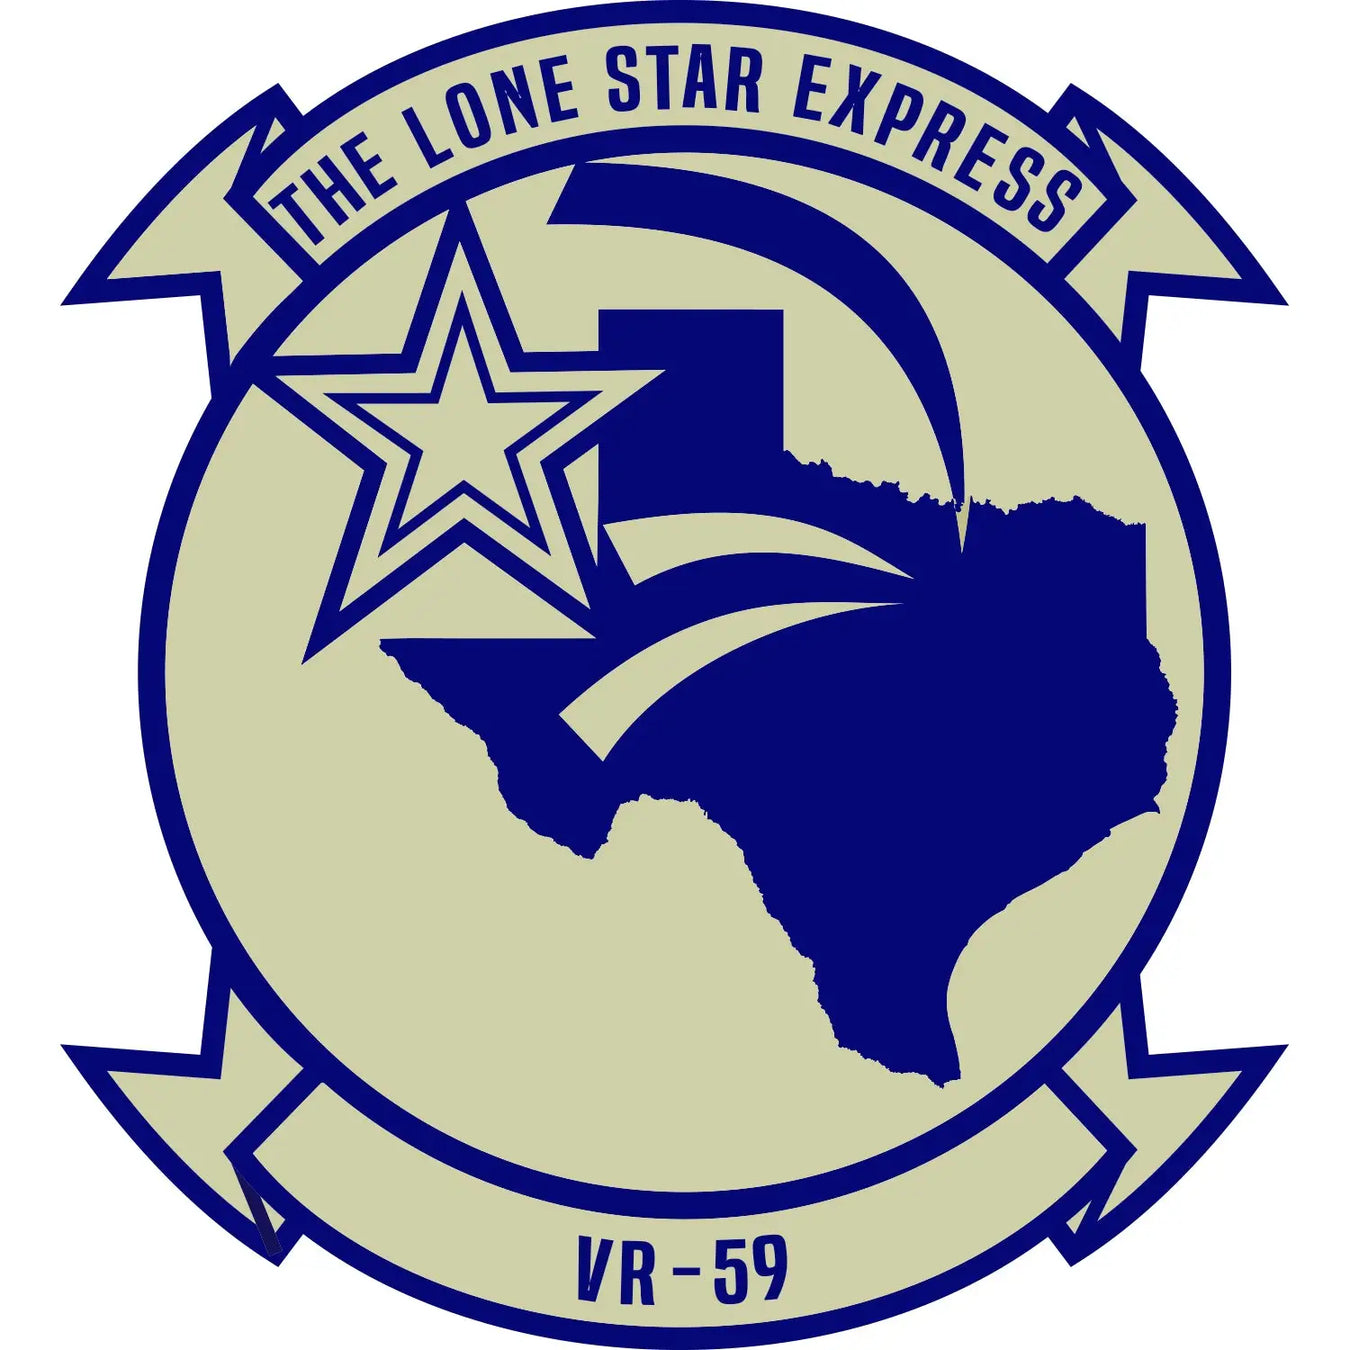 Fleet Logistics Support Squadron 59 (VR-59) Logo Decal Emblem Crest Insignia